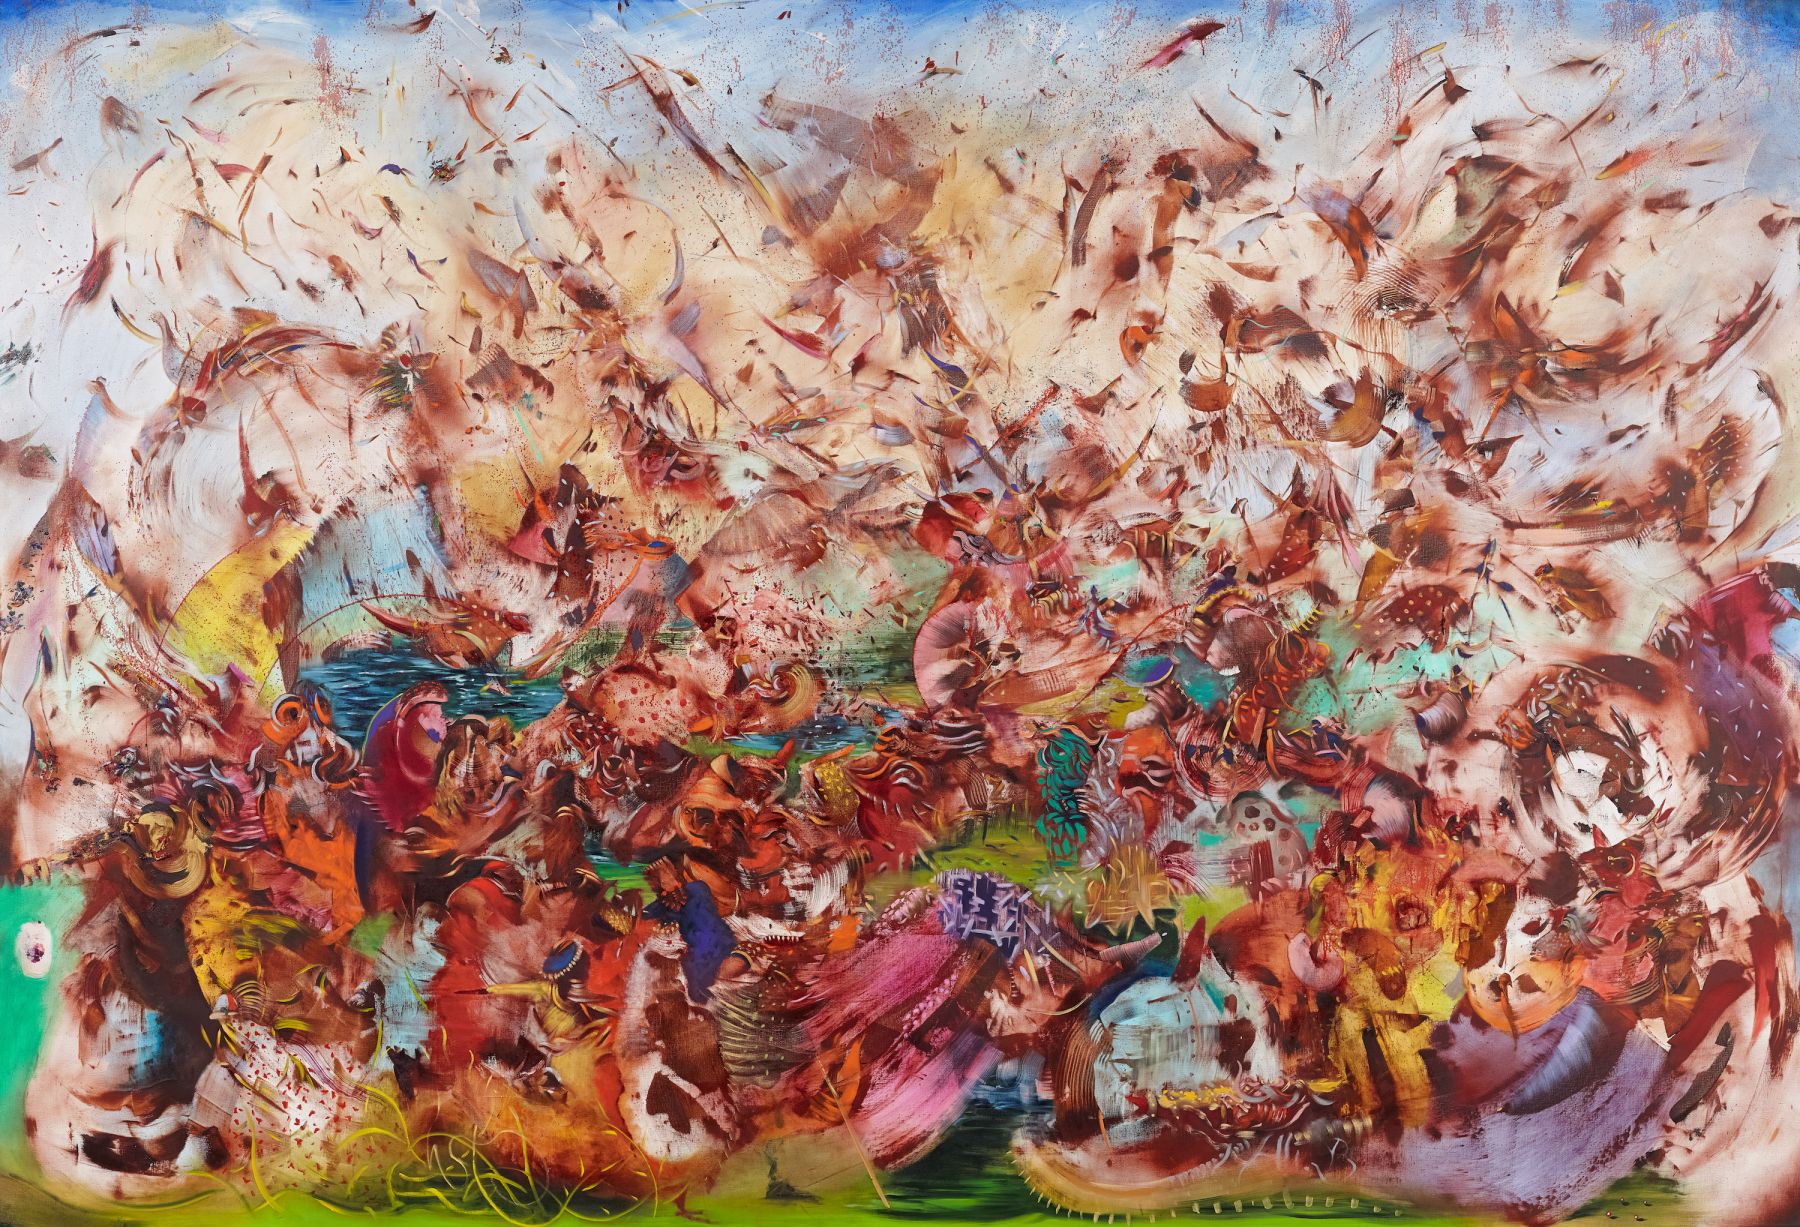 Contact (Контакт), 2013. Али Банисадр (Ali Banisadr) - современный иранский художник. Современная живопись. Художник синестет